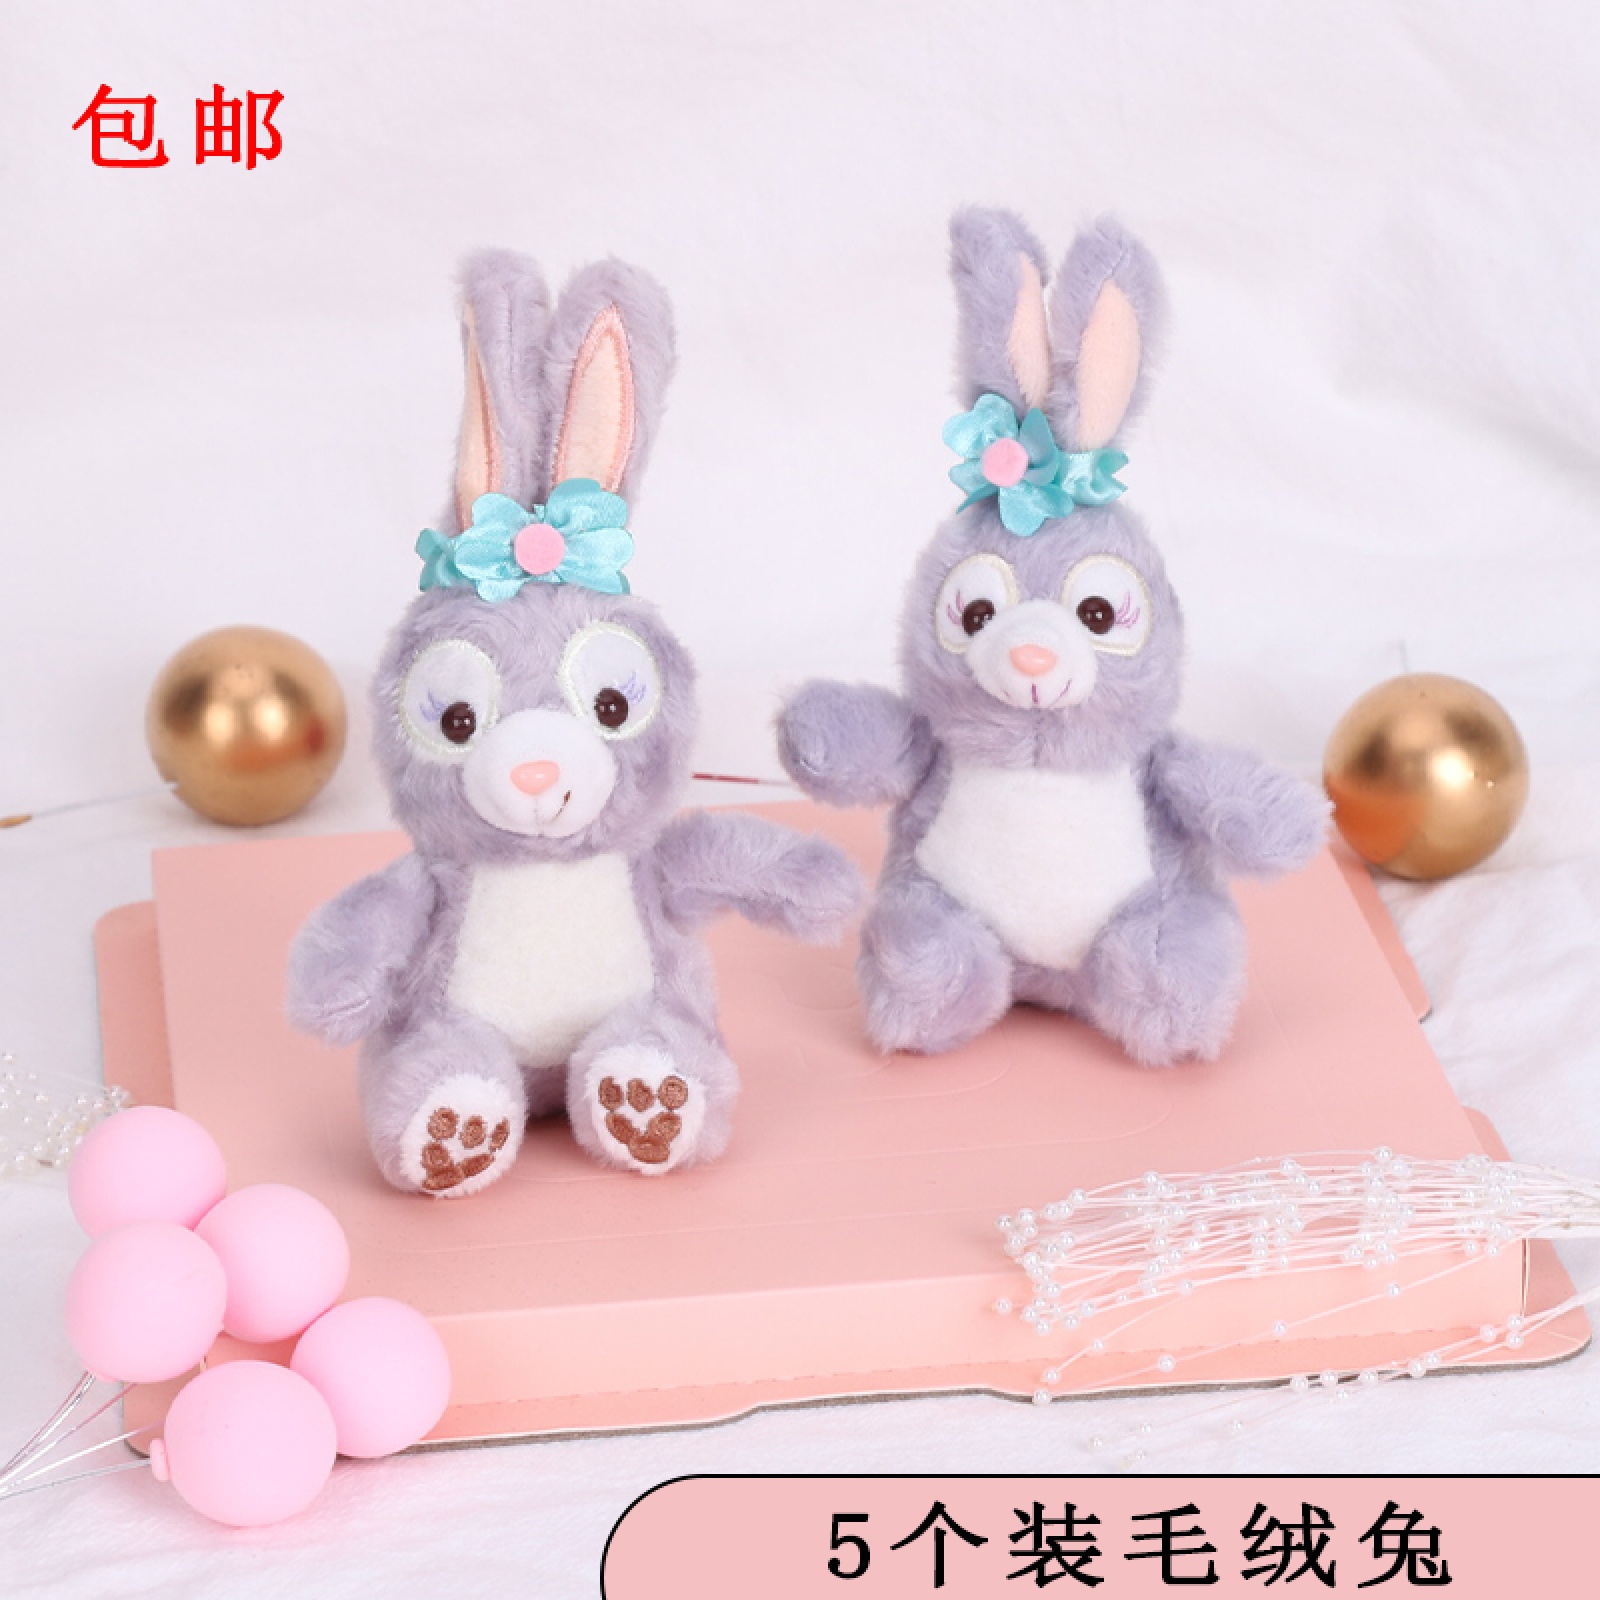 5个毛绒兔子紫色网红粉色贝儿小狐狸儿童卡通生日蛋糕装饰摆件